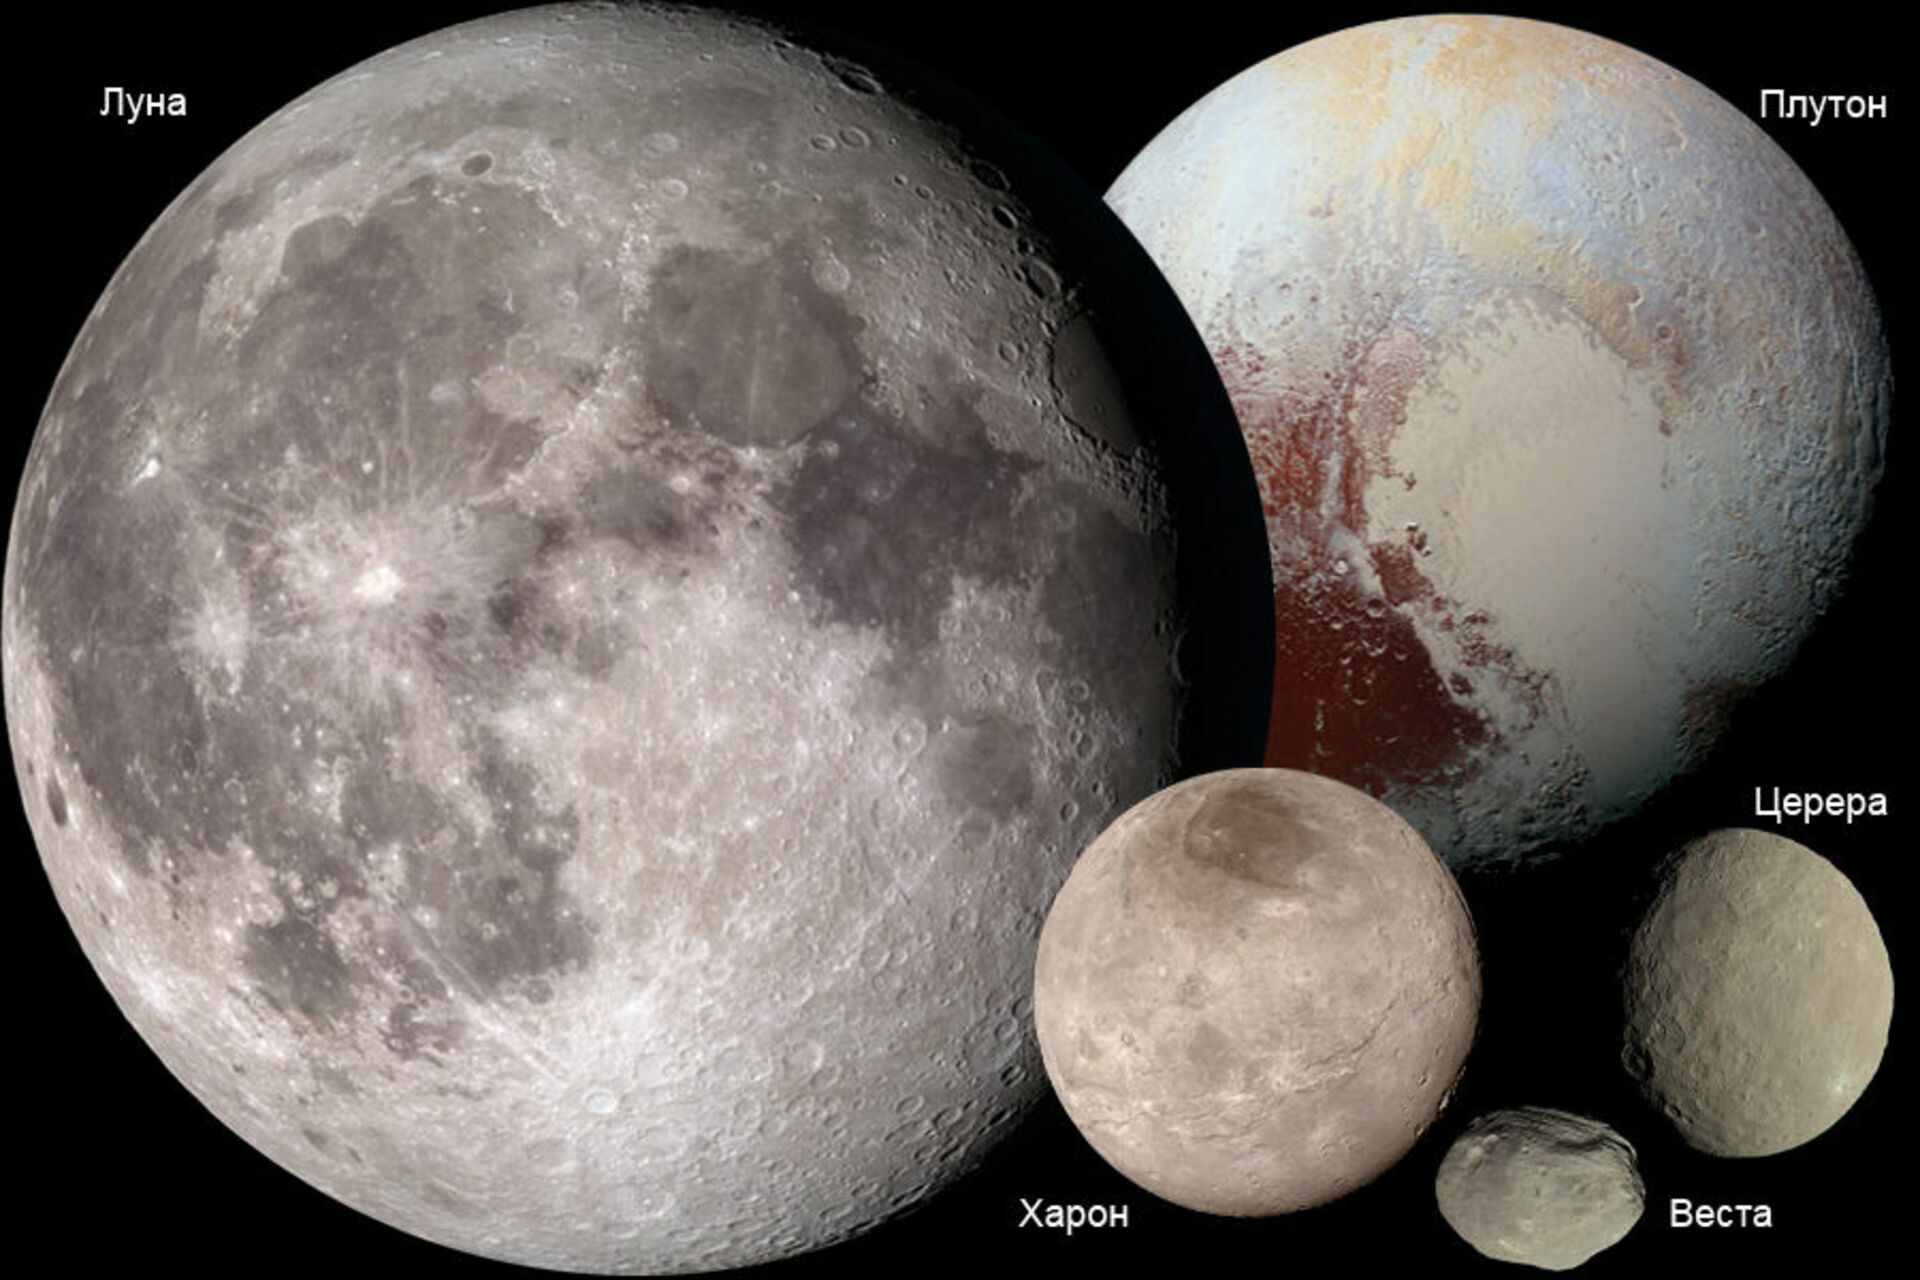 Луна это планета солнечной системы